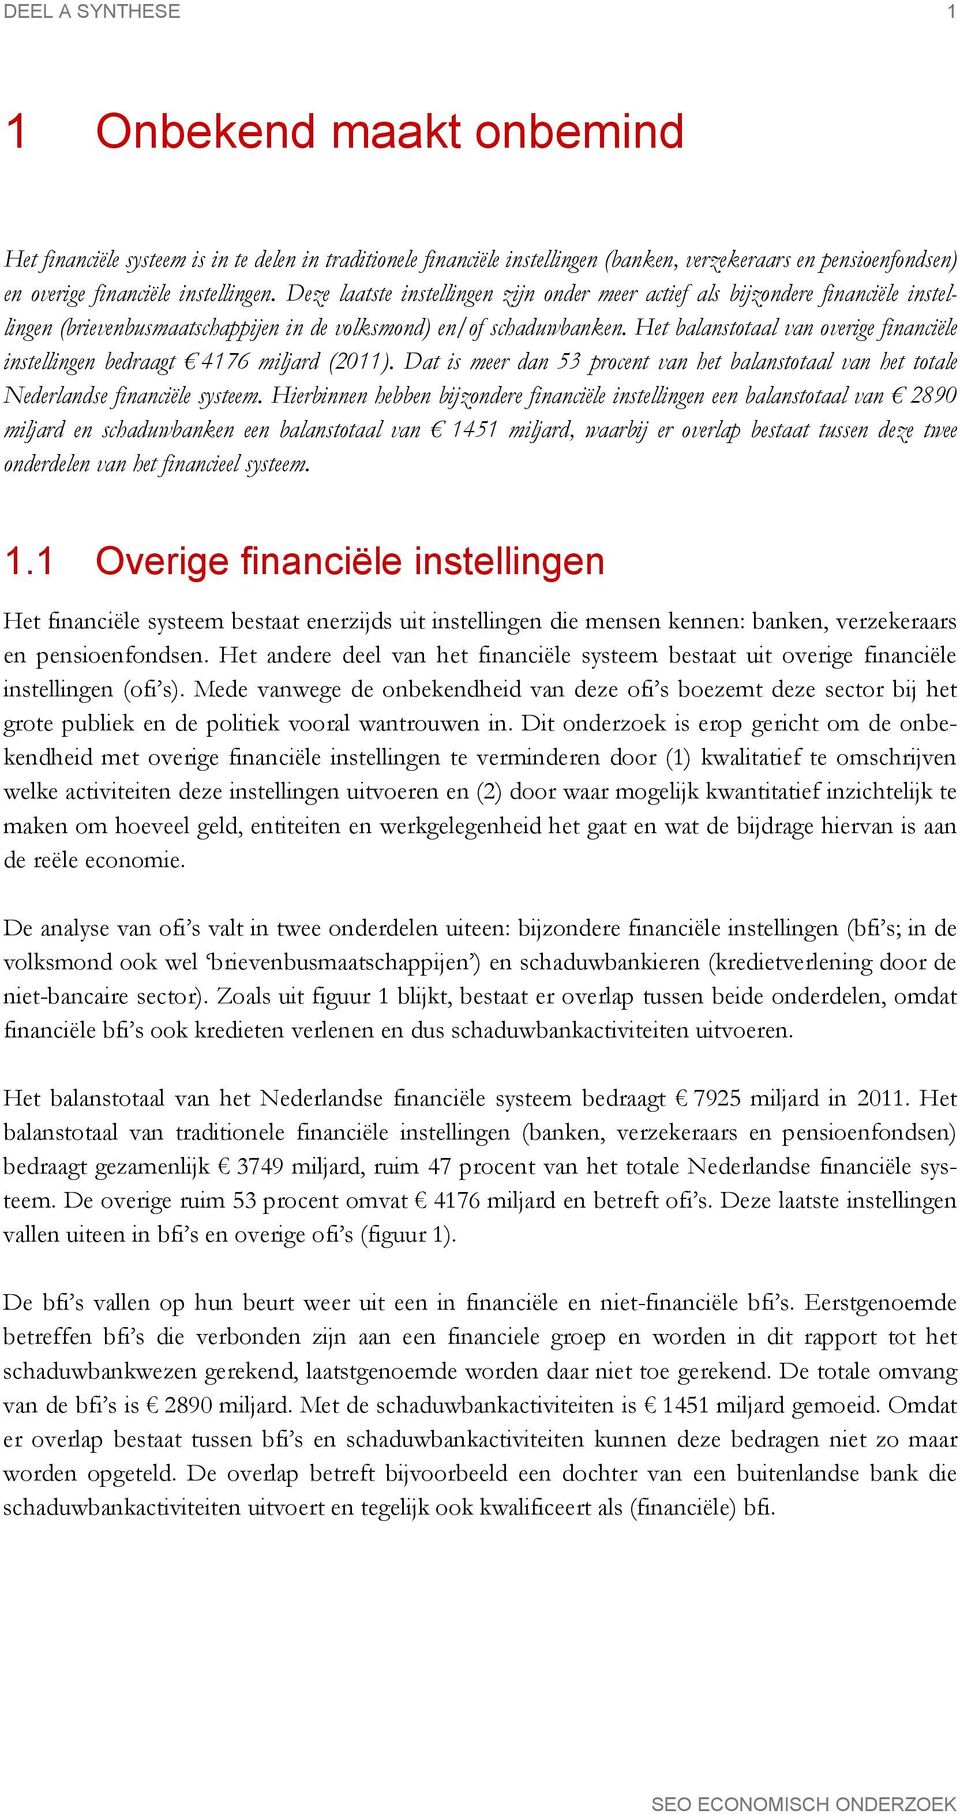 Het balanstotaal van overige financiële instellingen bedraagt 4176 miljard (2011). Dat is meer dan 53 procent van het balanstotaal van het totale Nederlandse financiële systeem.